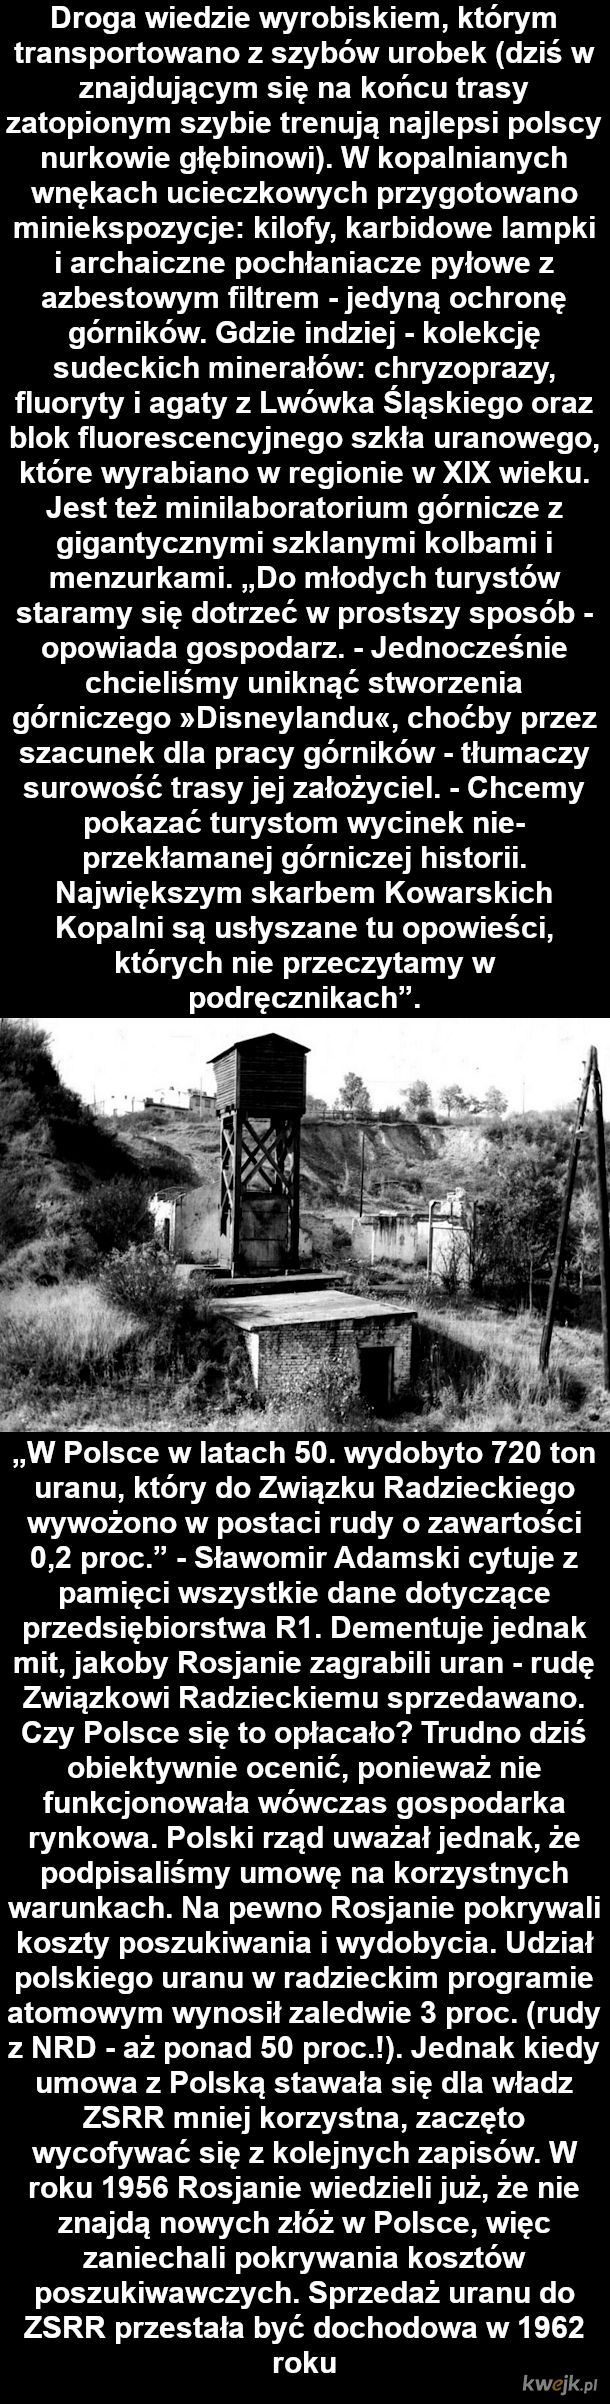 Historia tajnych kopalń uranu w Polsce za porozumieniem Polski i ZSRR